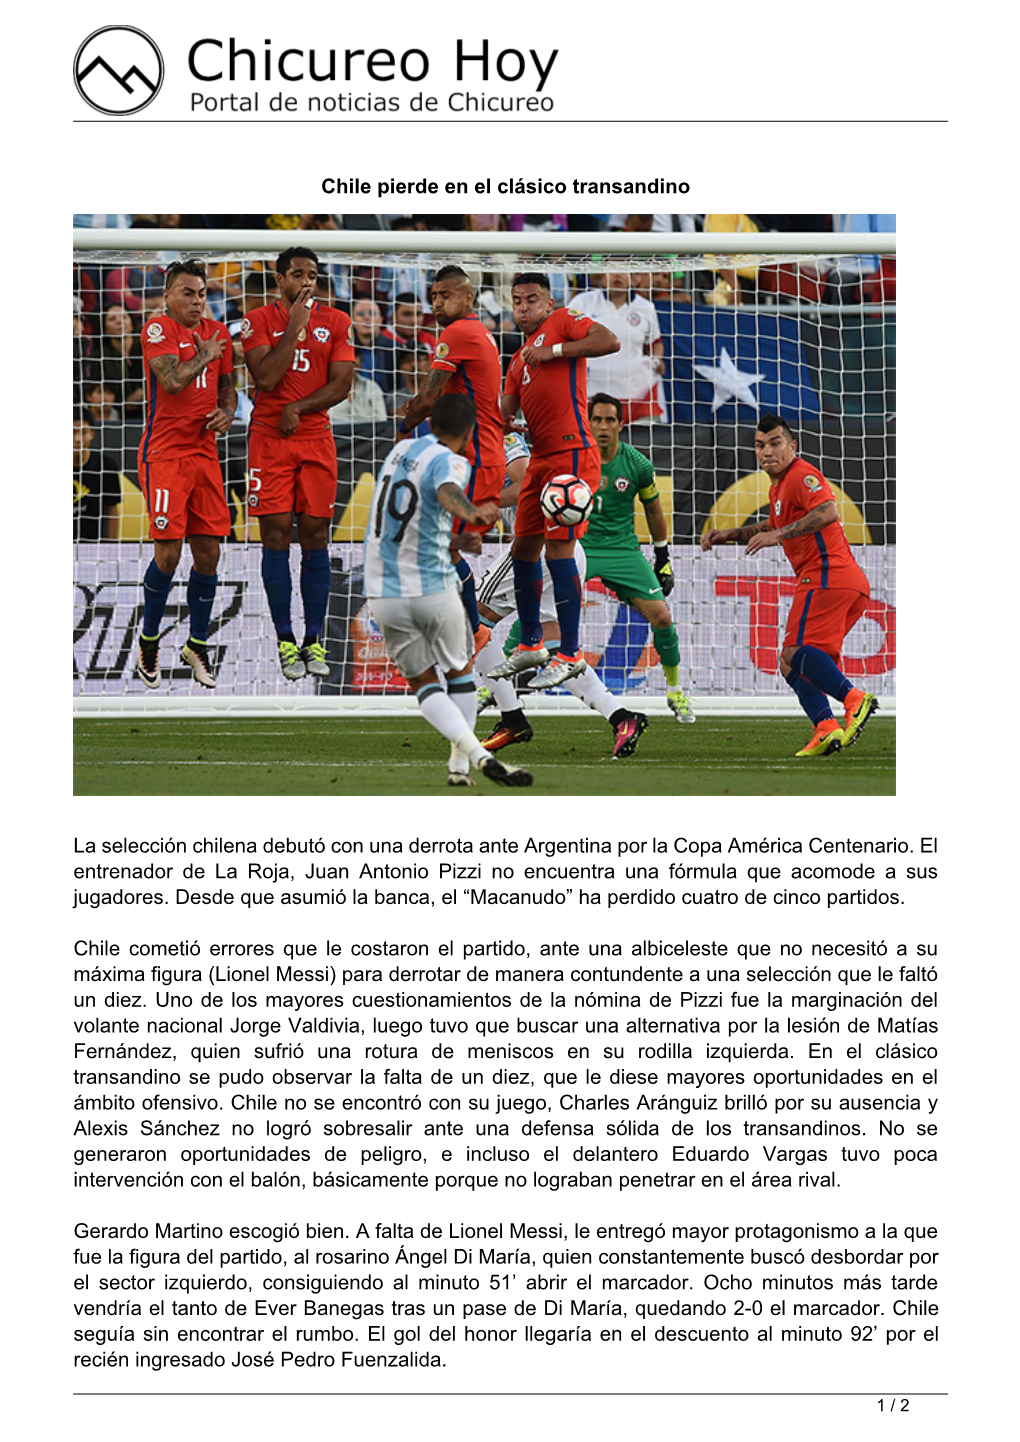 Chile Pierde En El Clásico Transandino La Selección